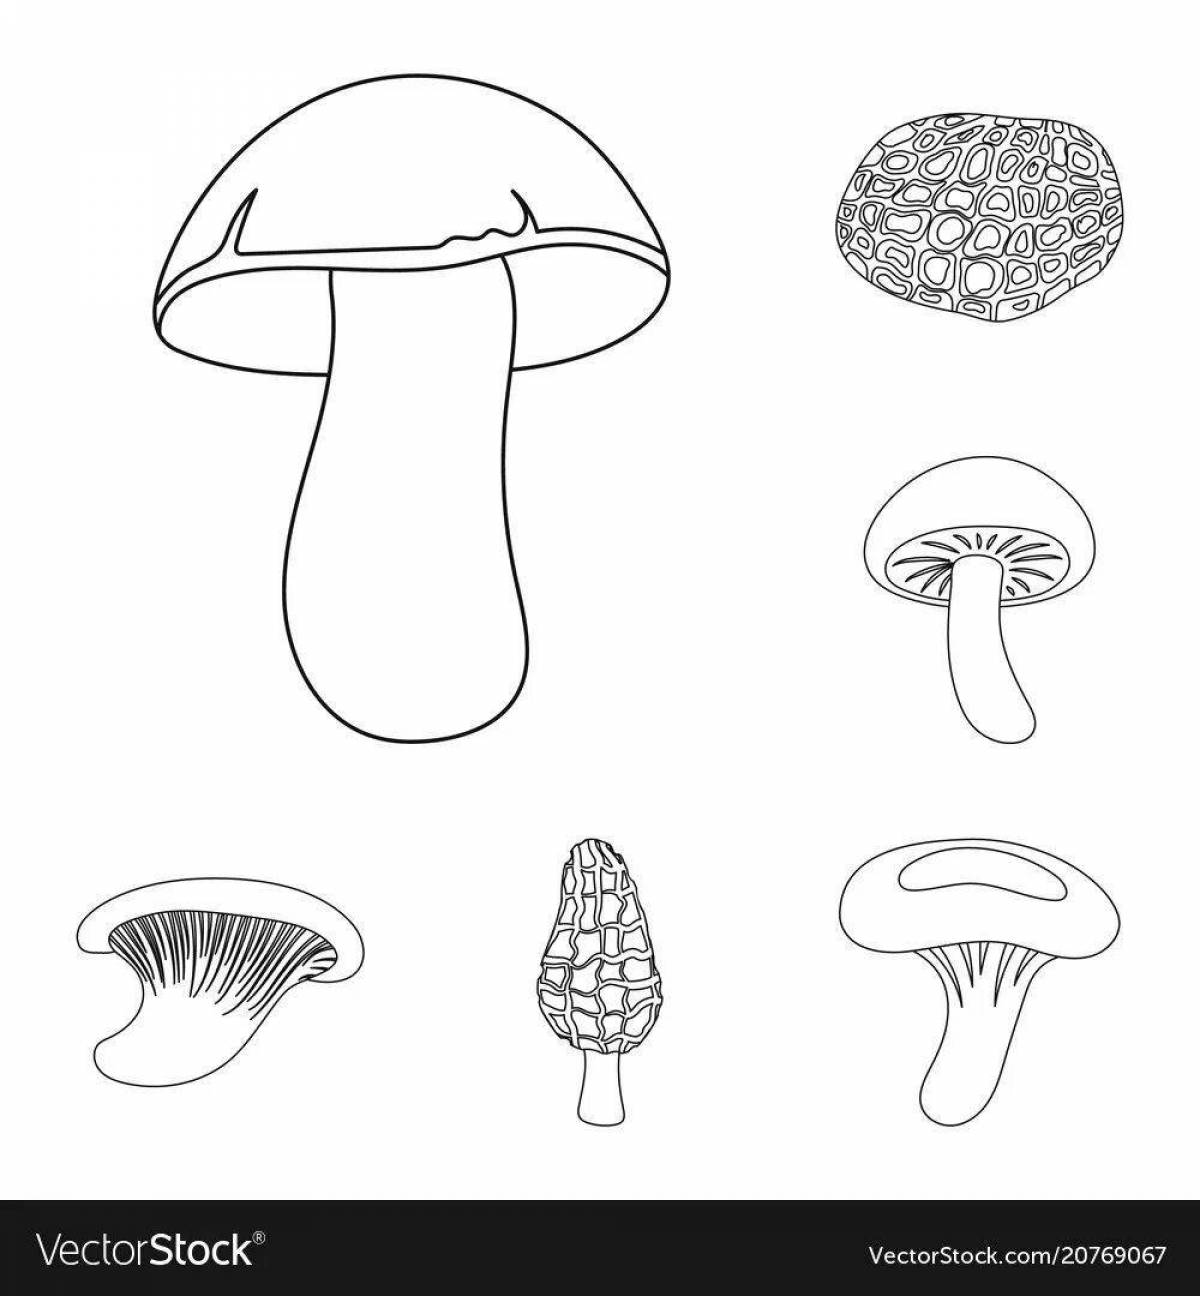 Раскраска игристых съедобных грибов